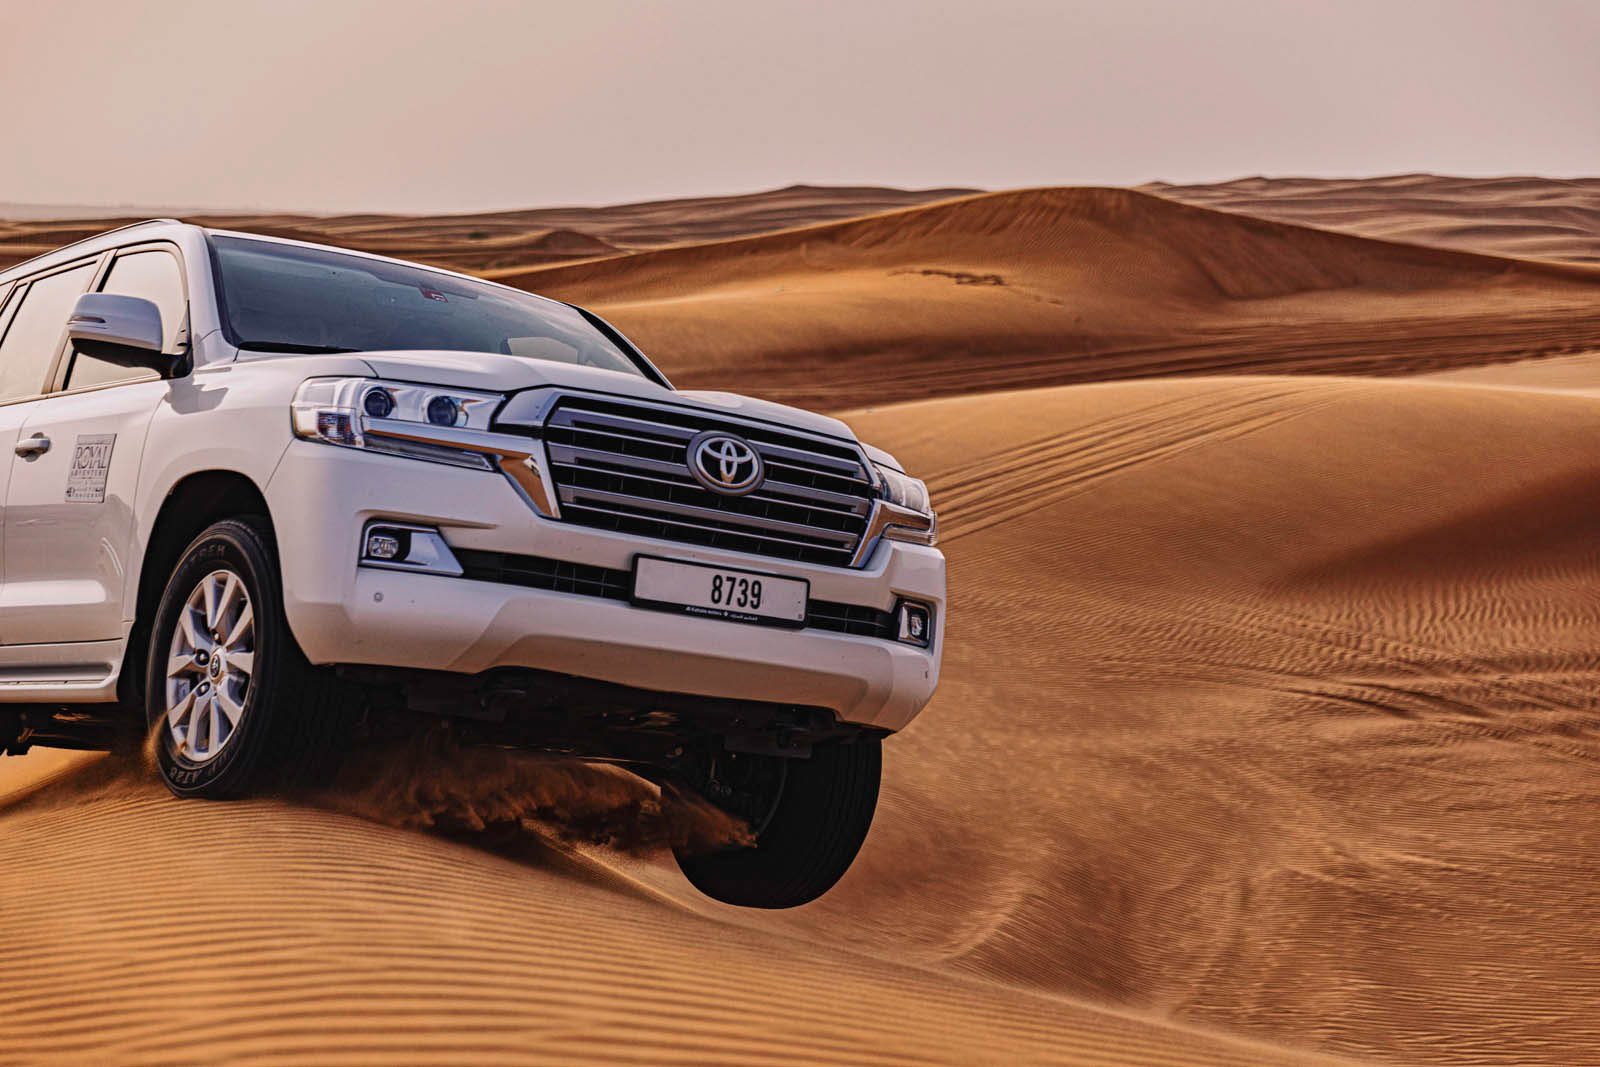 Ein weißer Toyota Land Cruiser fährt über eine Sanddüne in einer Wüstenlandschaft, eine Staubwolke hinterlässt eine Spur, das Nummernschild ist sichtbar. © Fotografie Tomas Rodriguez